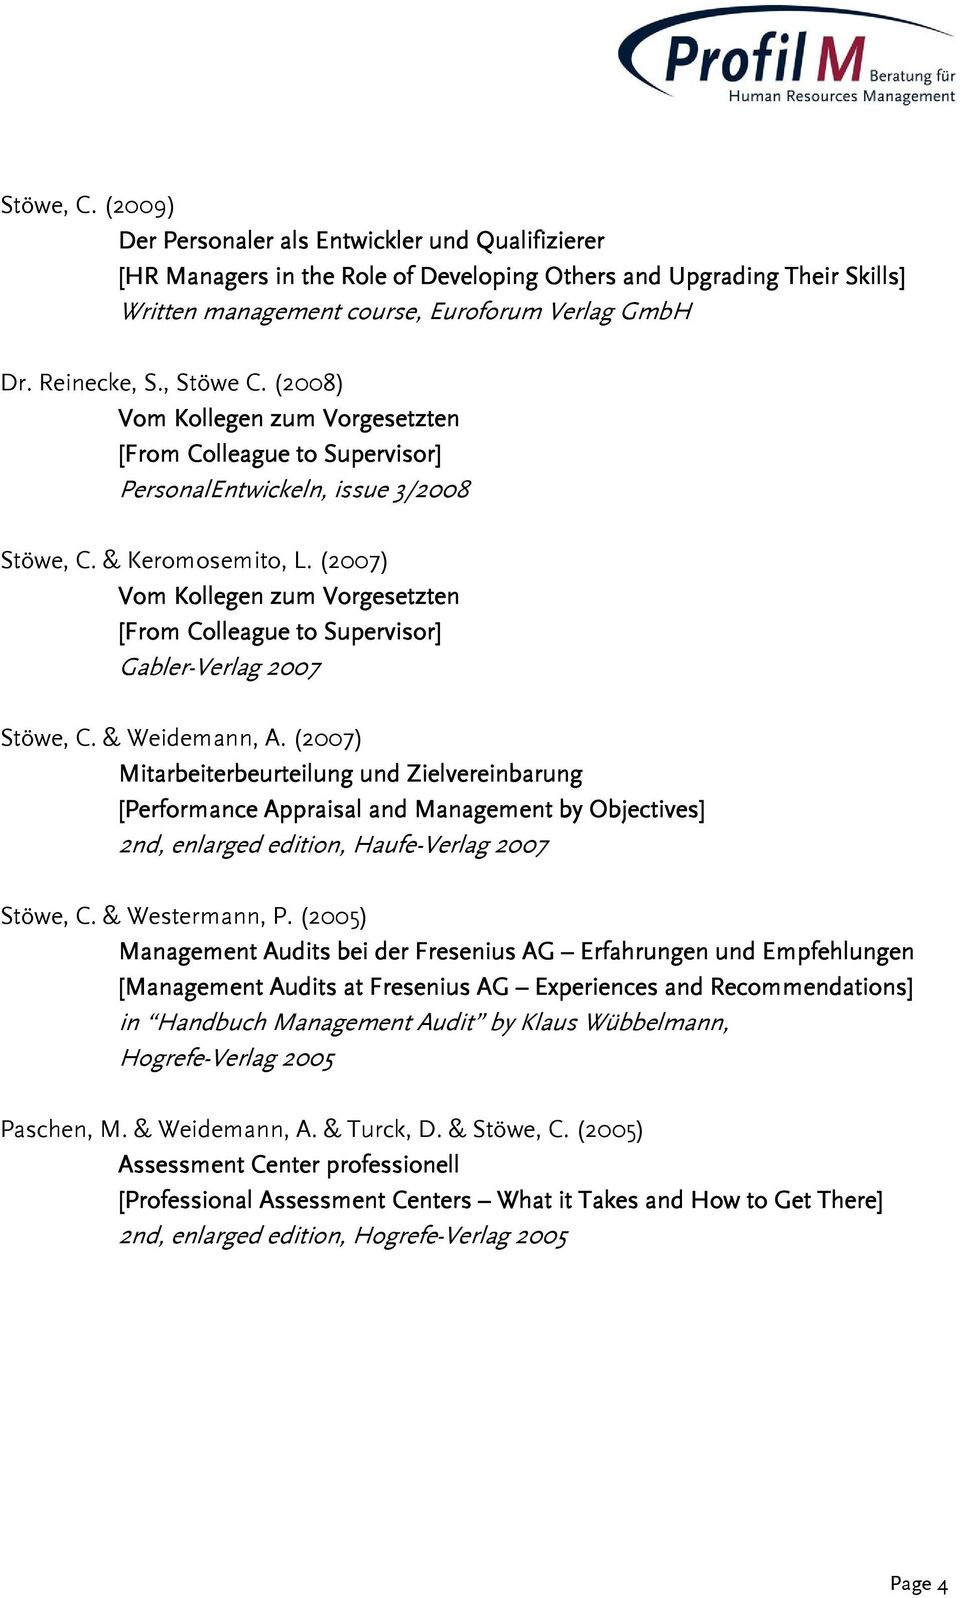 (2007) Vom Kollegen zum Vorgesetzten [From Colleague to Supervisor] Gabler-Verlag 2007 Stöwe, C. & Weidemann, A.